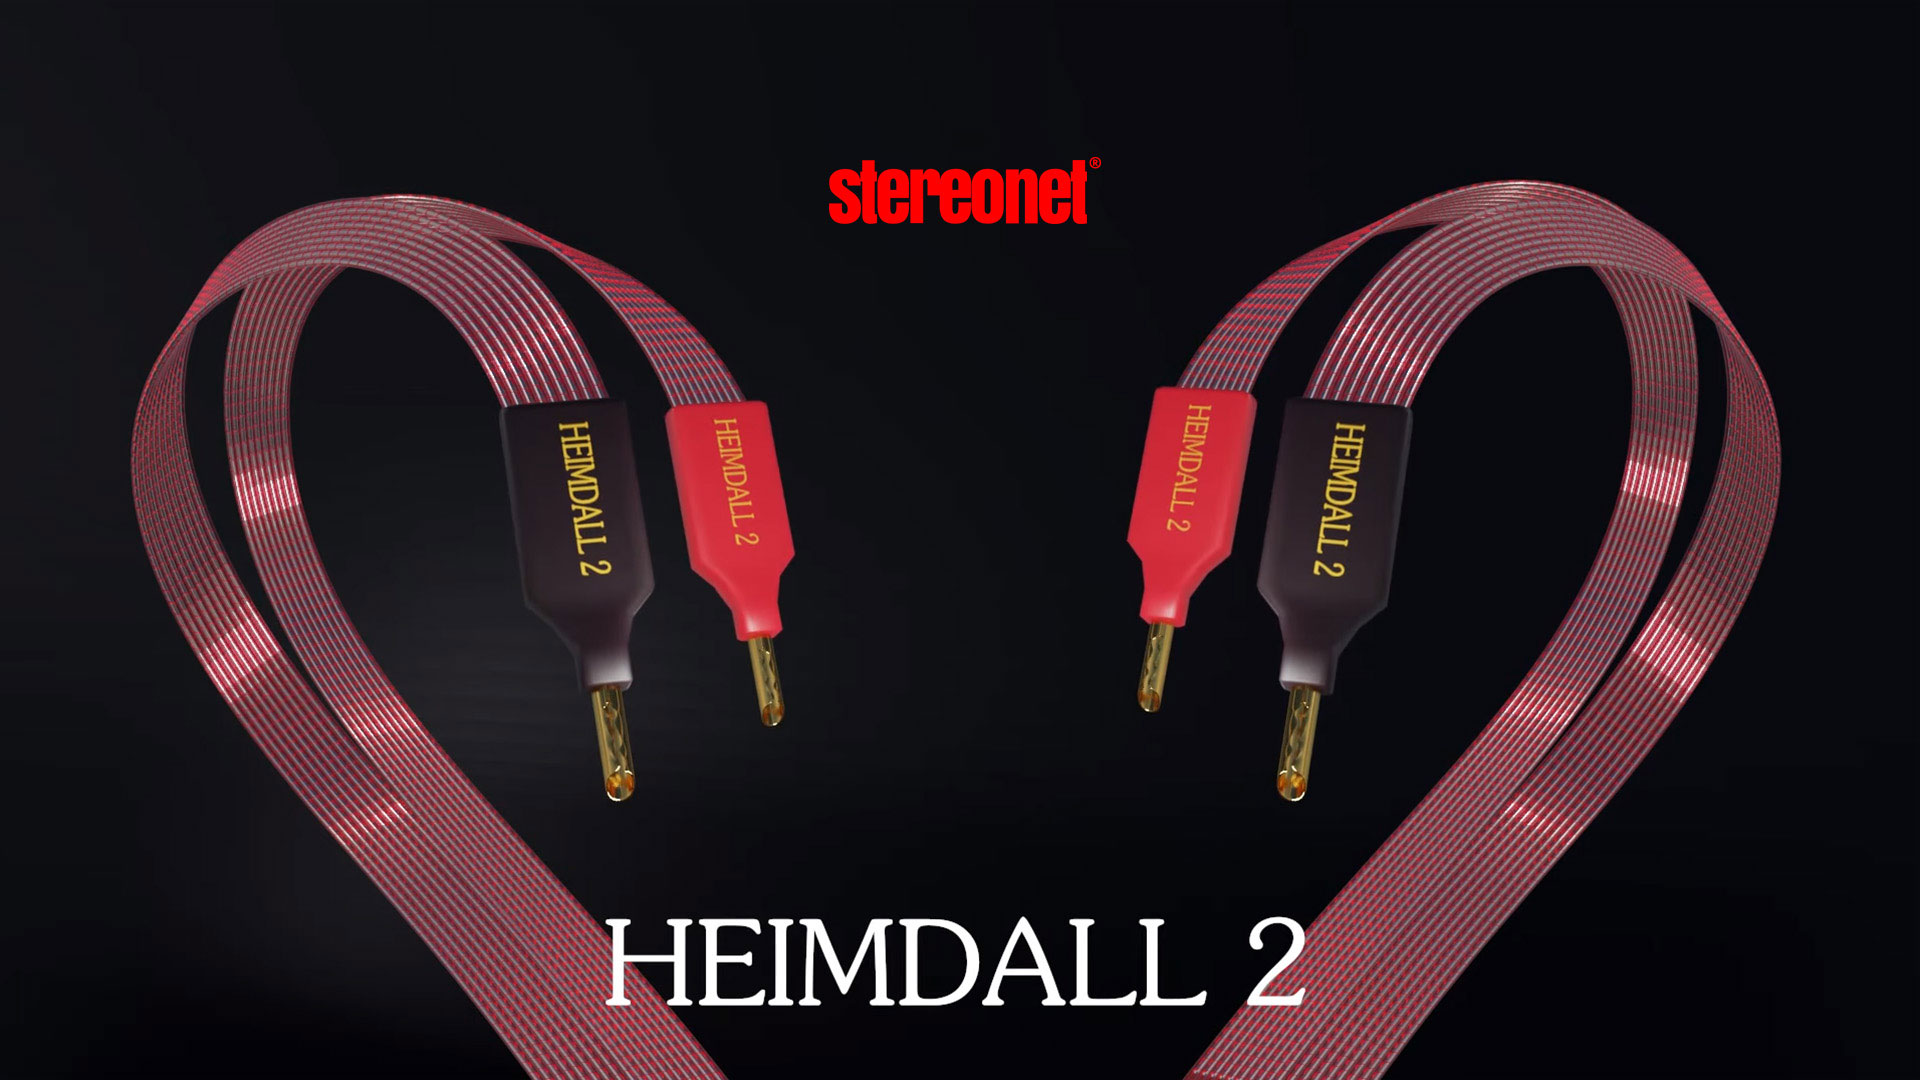   Nordost Heimdall 2   .  StereoNet.com